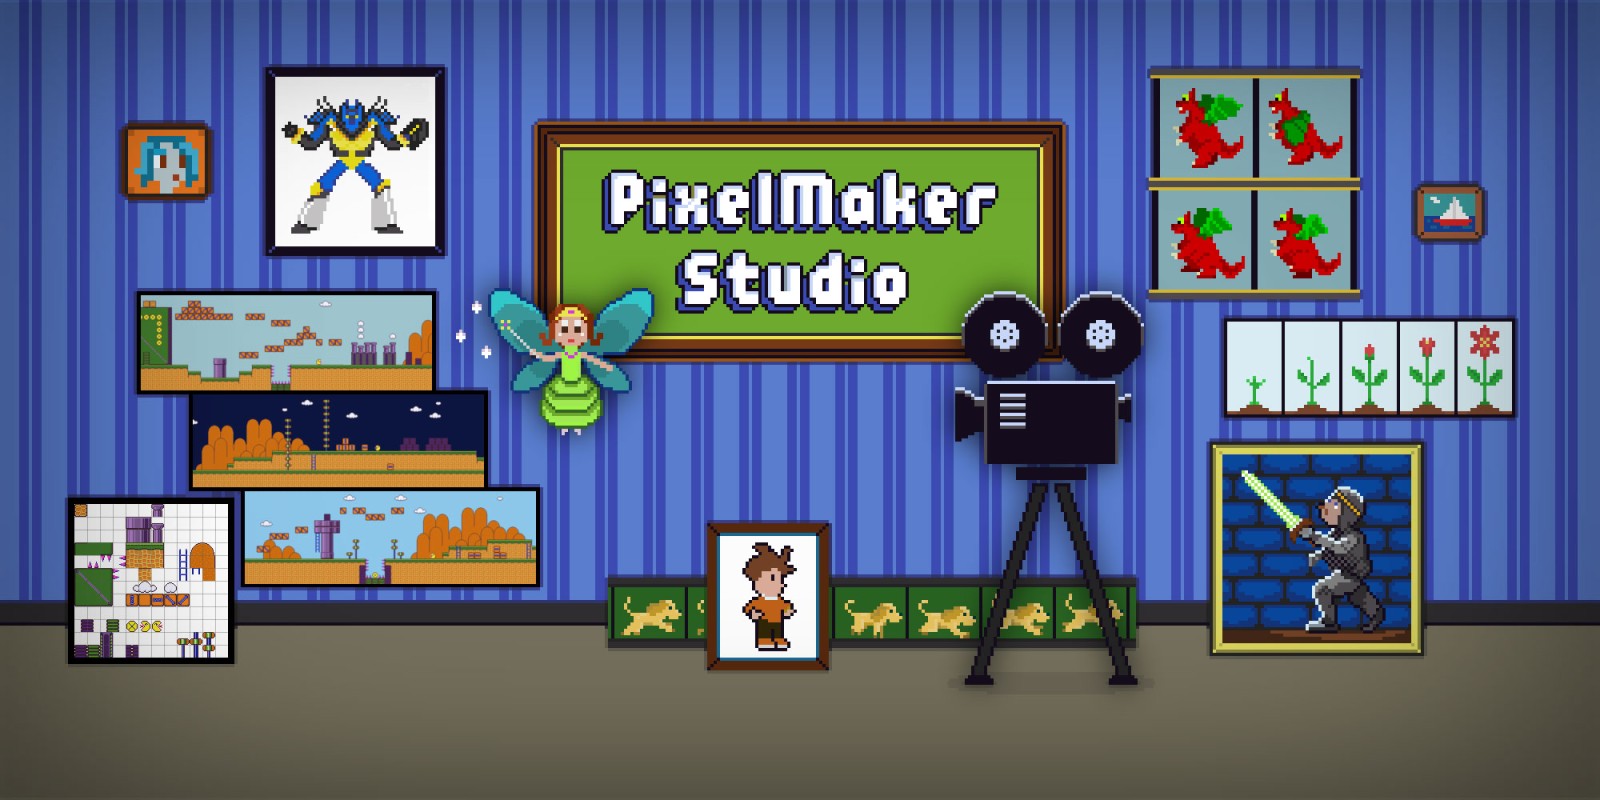 Pixelmaker Studio Nintendo 3ds Download Software Games